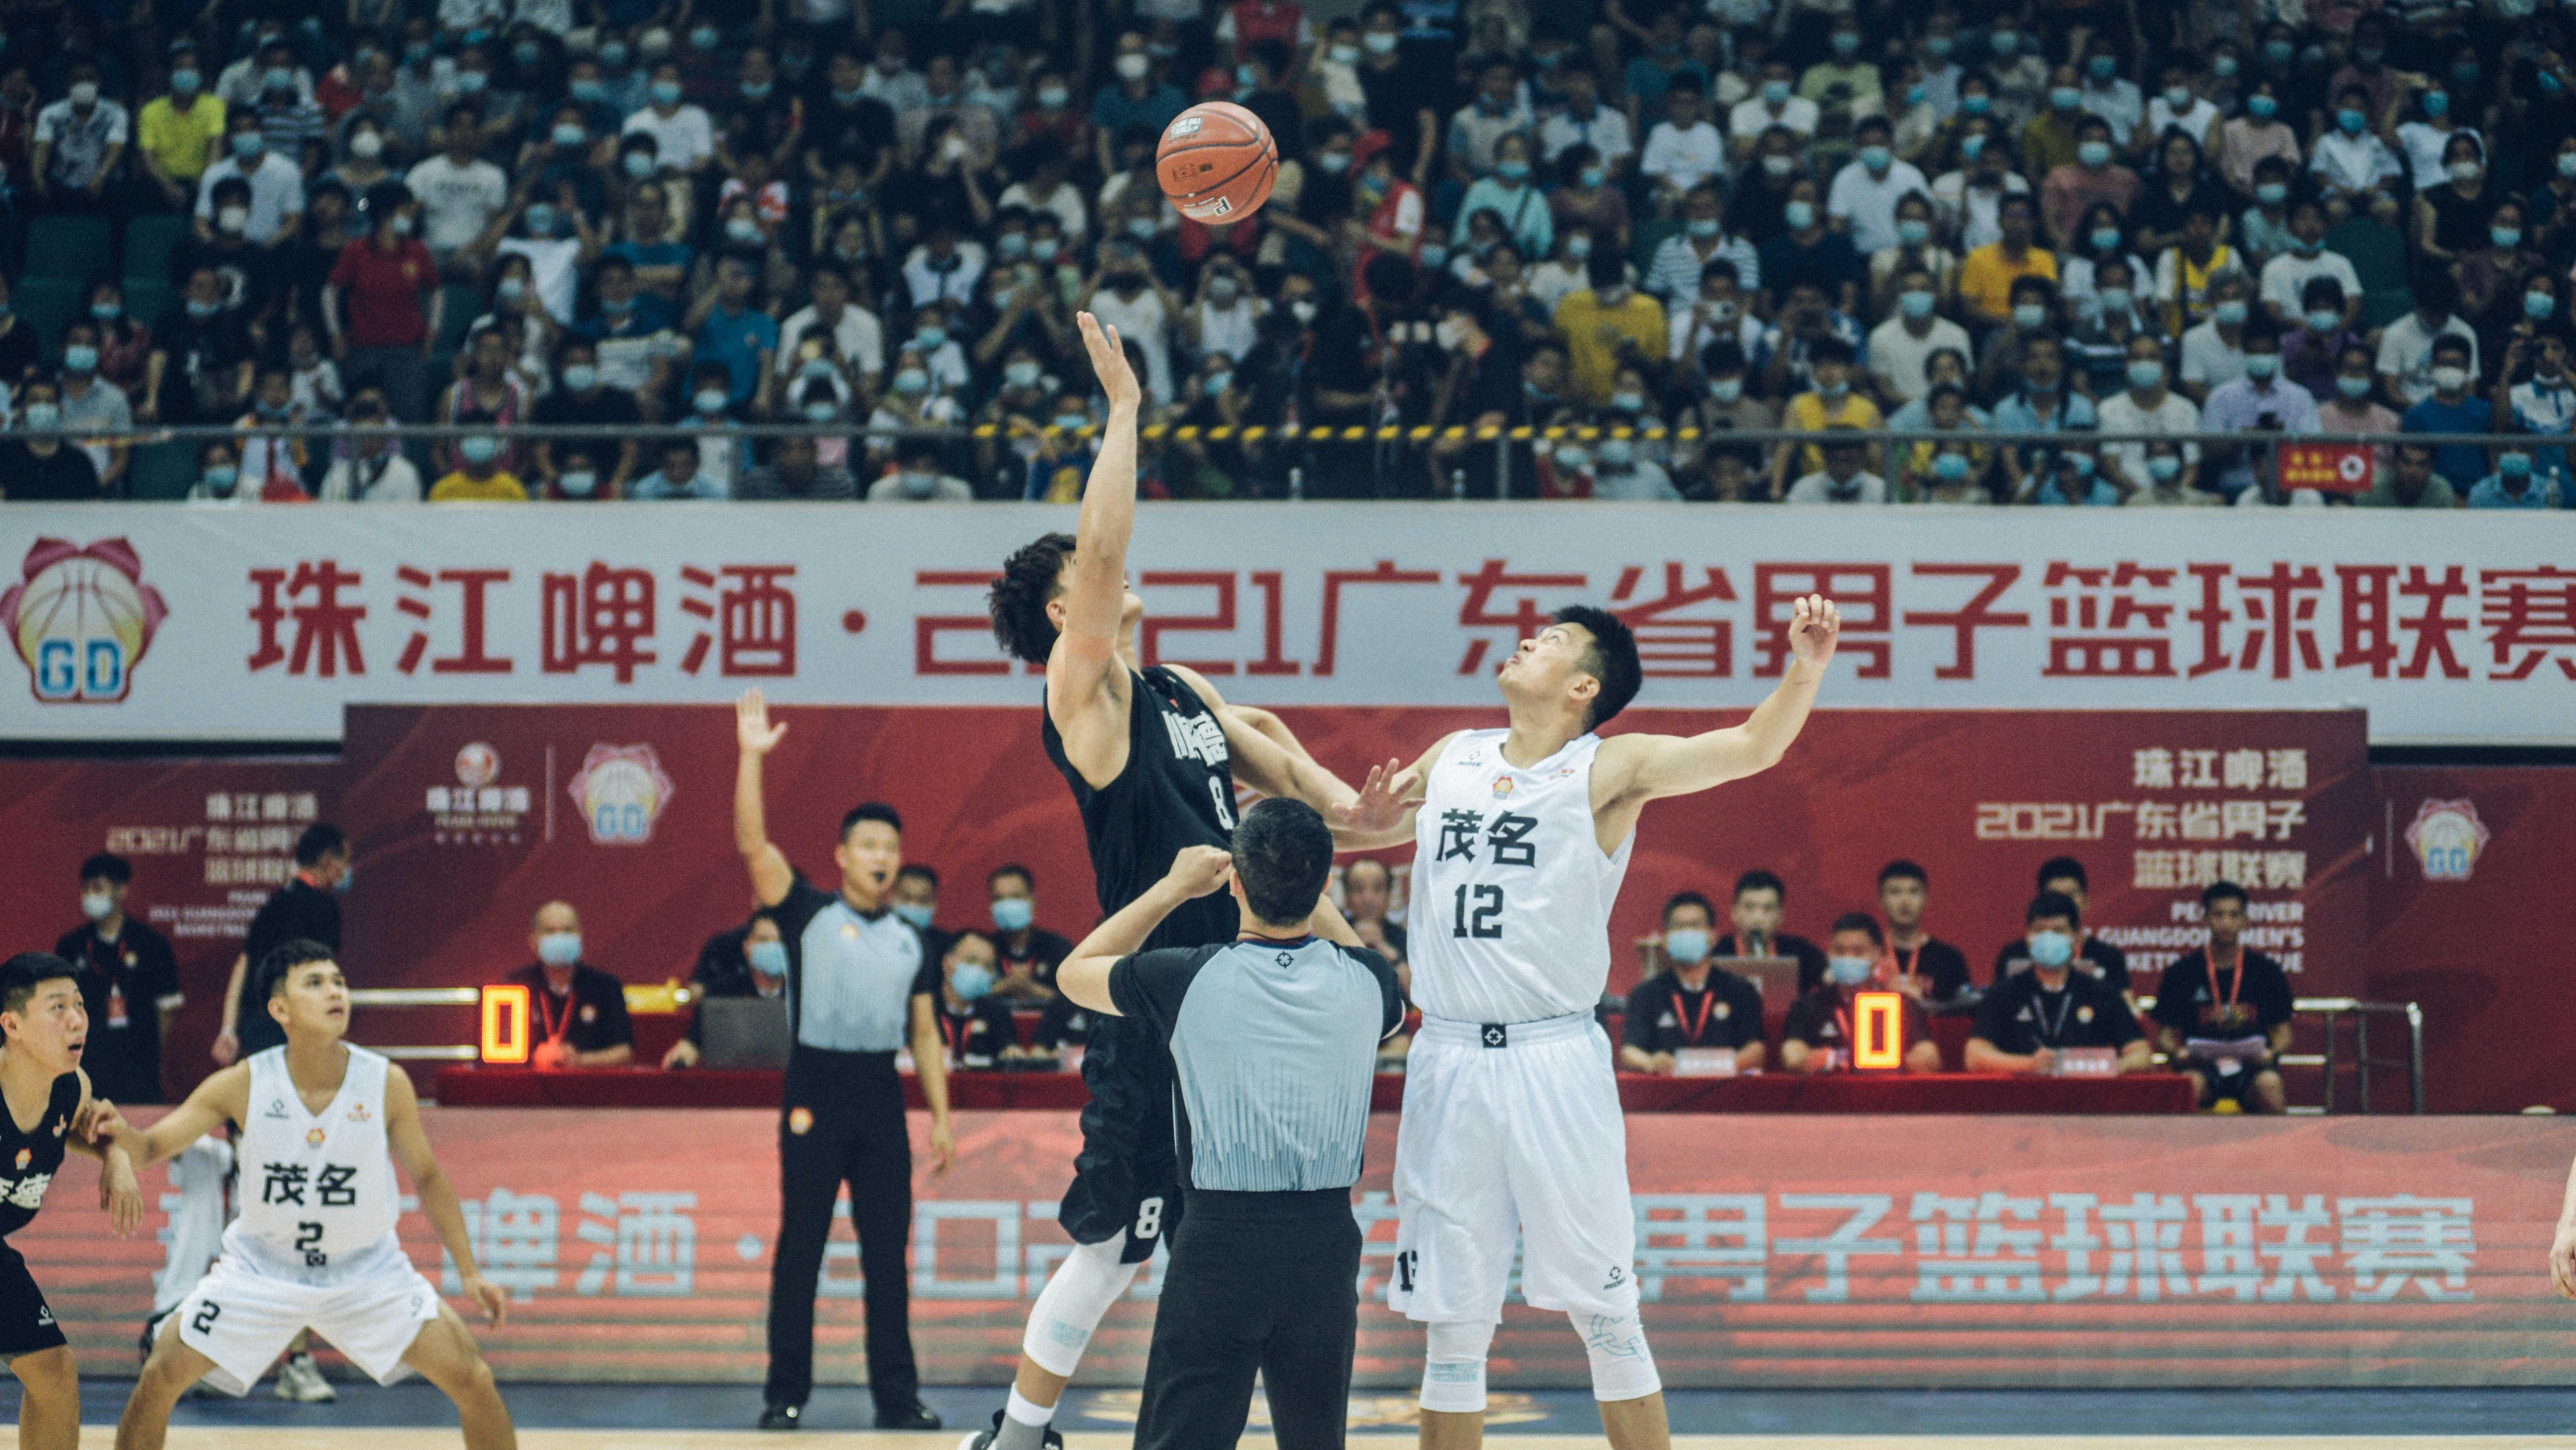 广东省男篮联赛电白揭幕, 连续举办七年全面升级